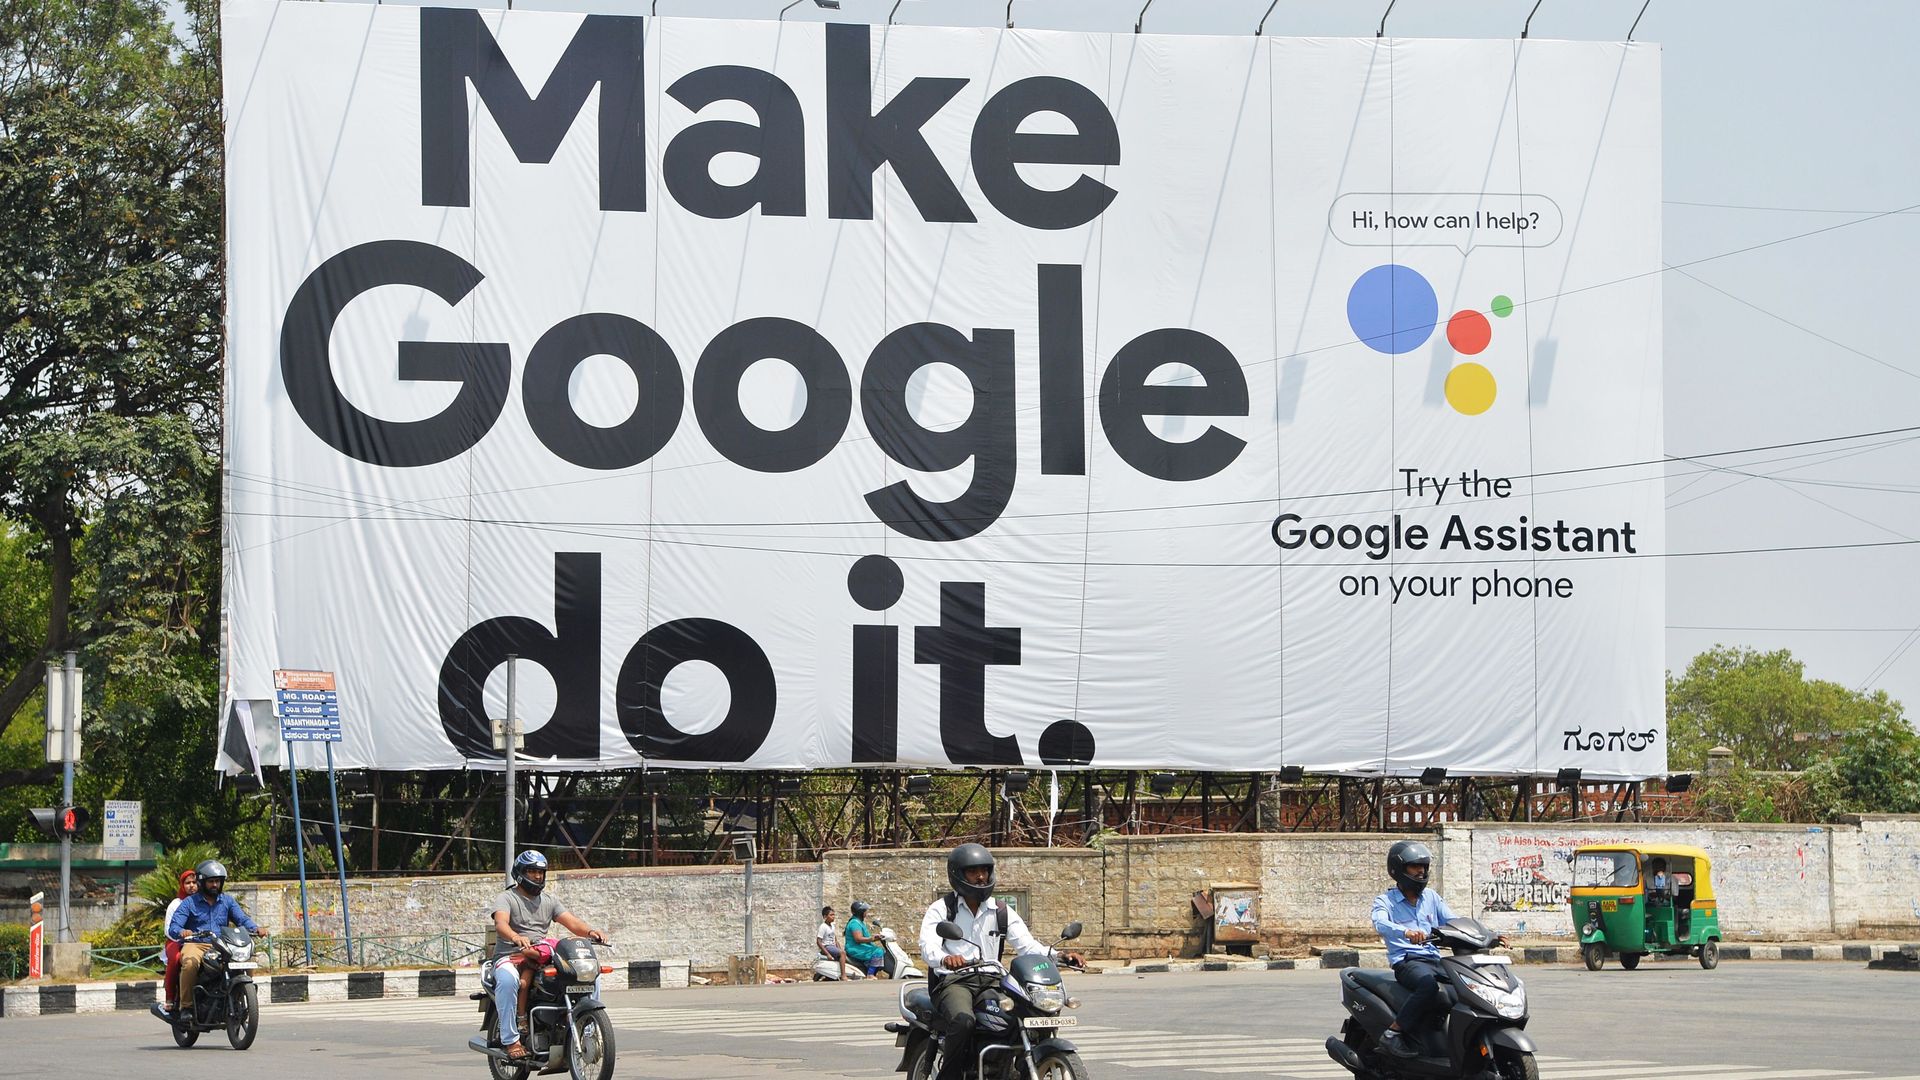 Advertising banner reading "Make Google do it"